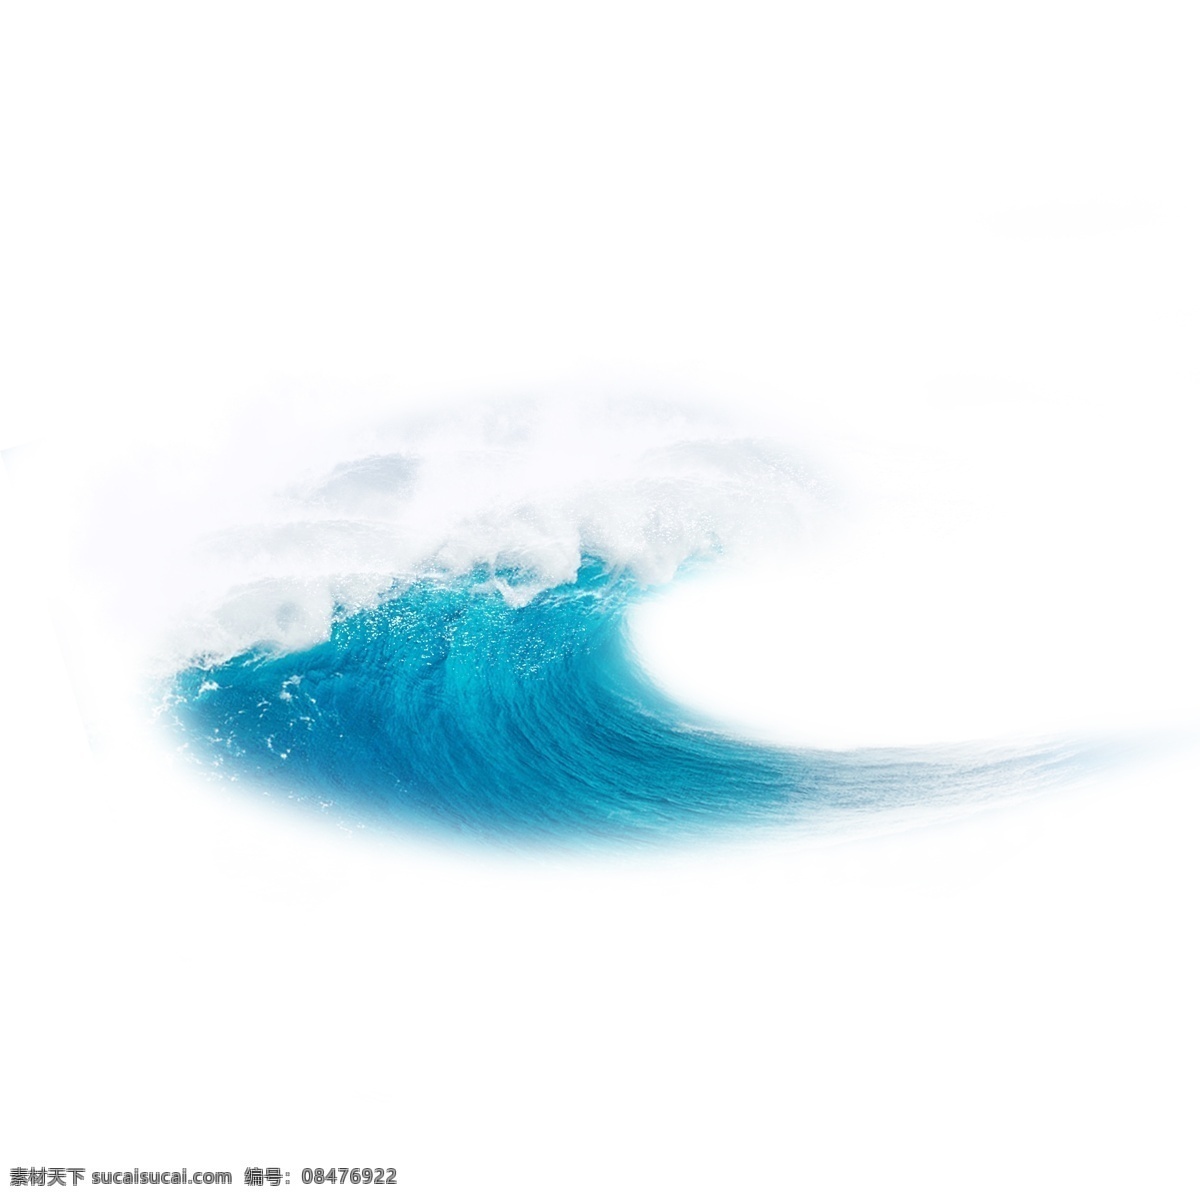 水浪 白色 水花 蓝色 海洋 元素 蓝色水浪 喷溅的浪花 白色浪花 波浪 海浪 浪花 波涛 大海 效果 矢量 浪 装饰